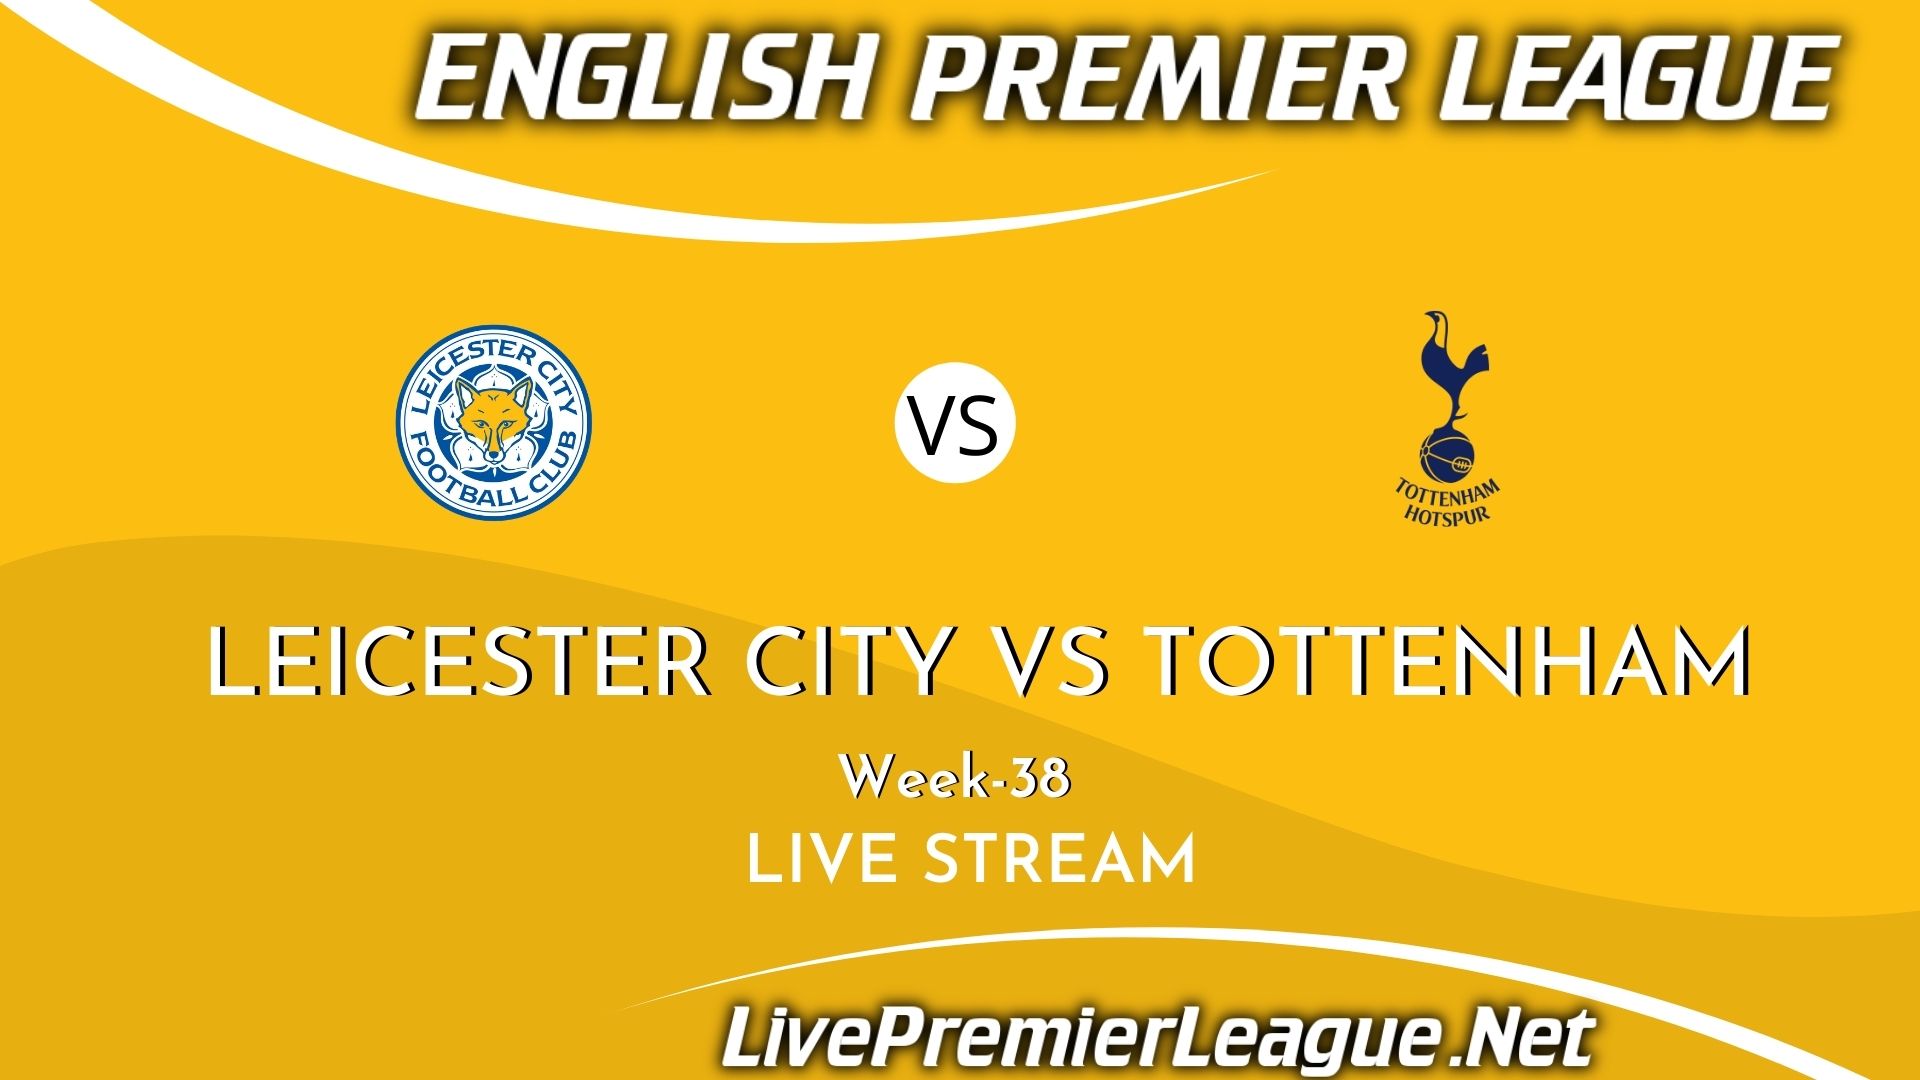 Leicester City Vs Tottenham Hotspur Live Stream 2021 | Premier League Week 38